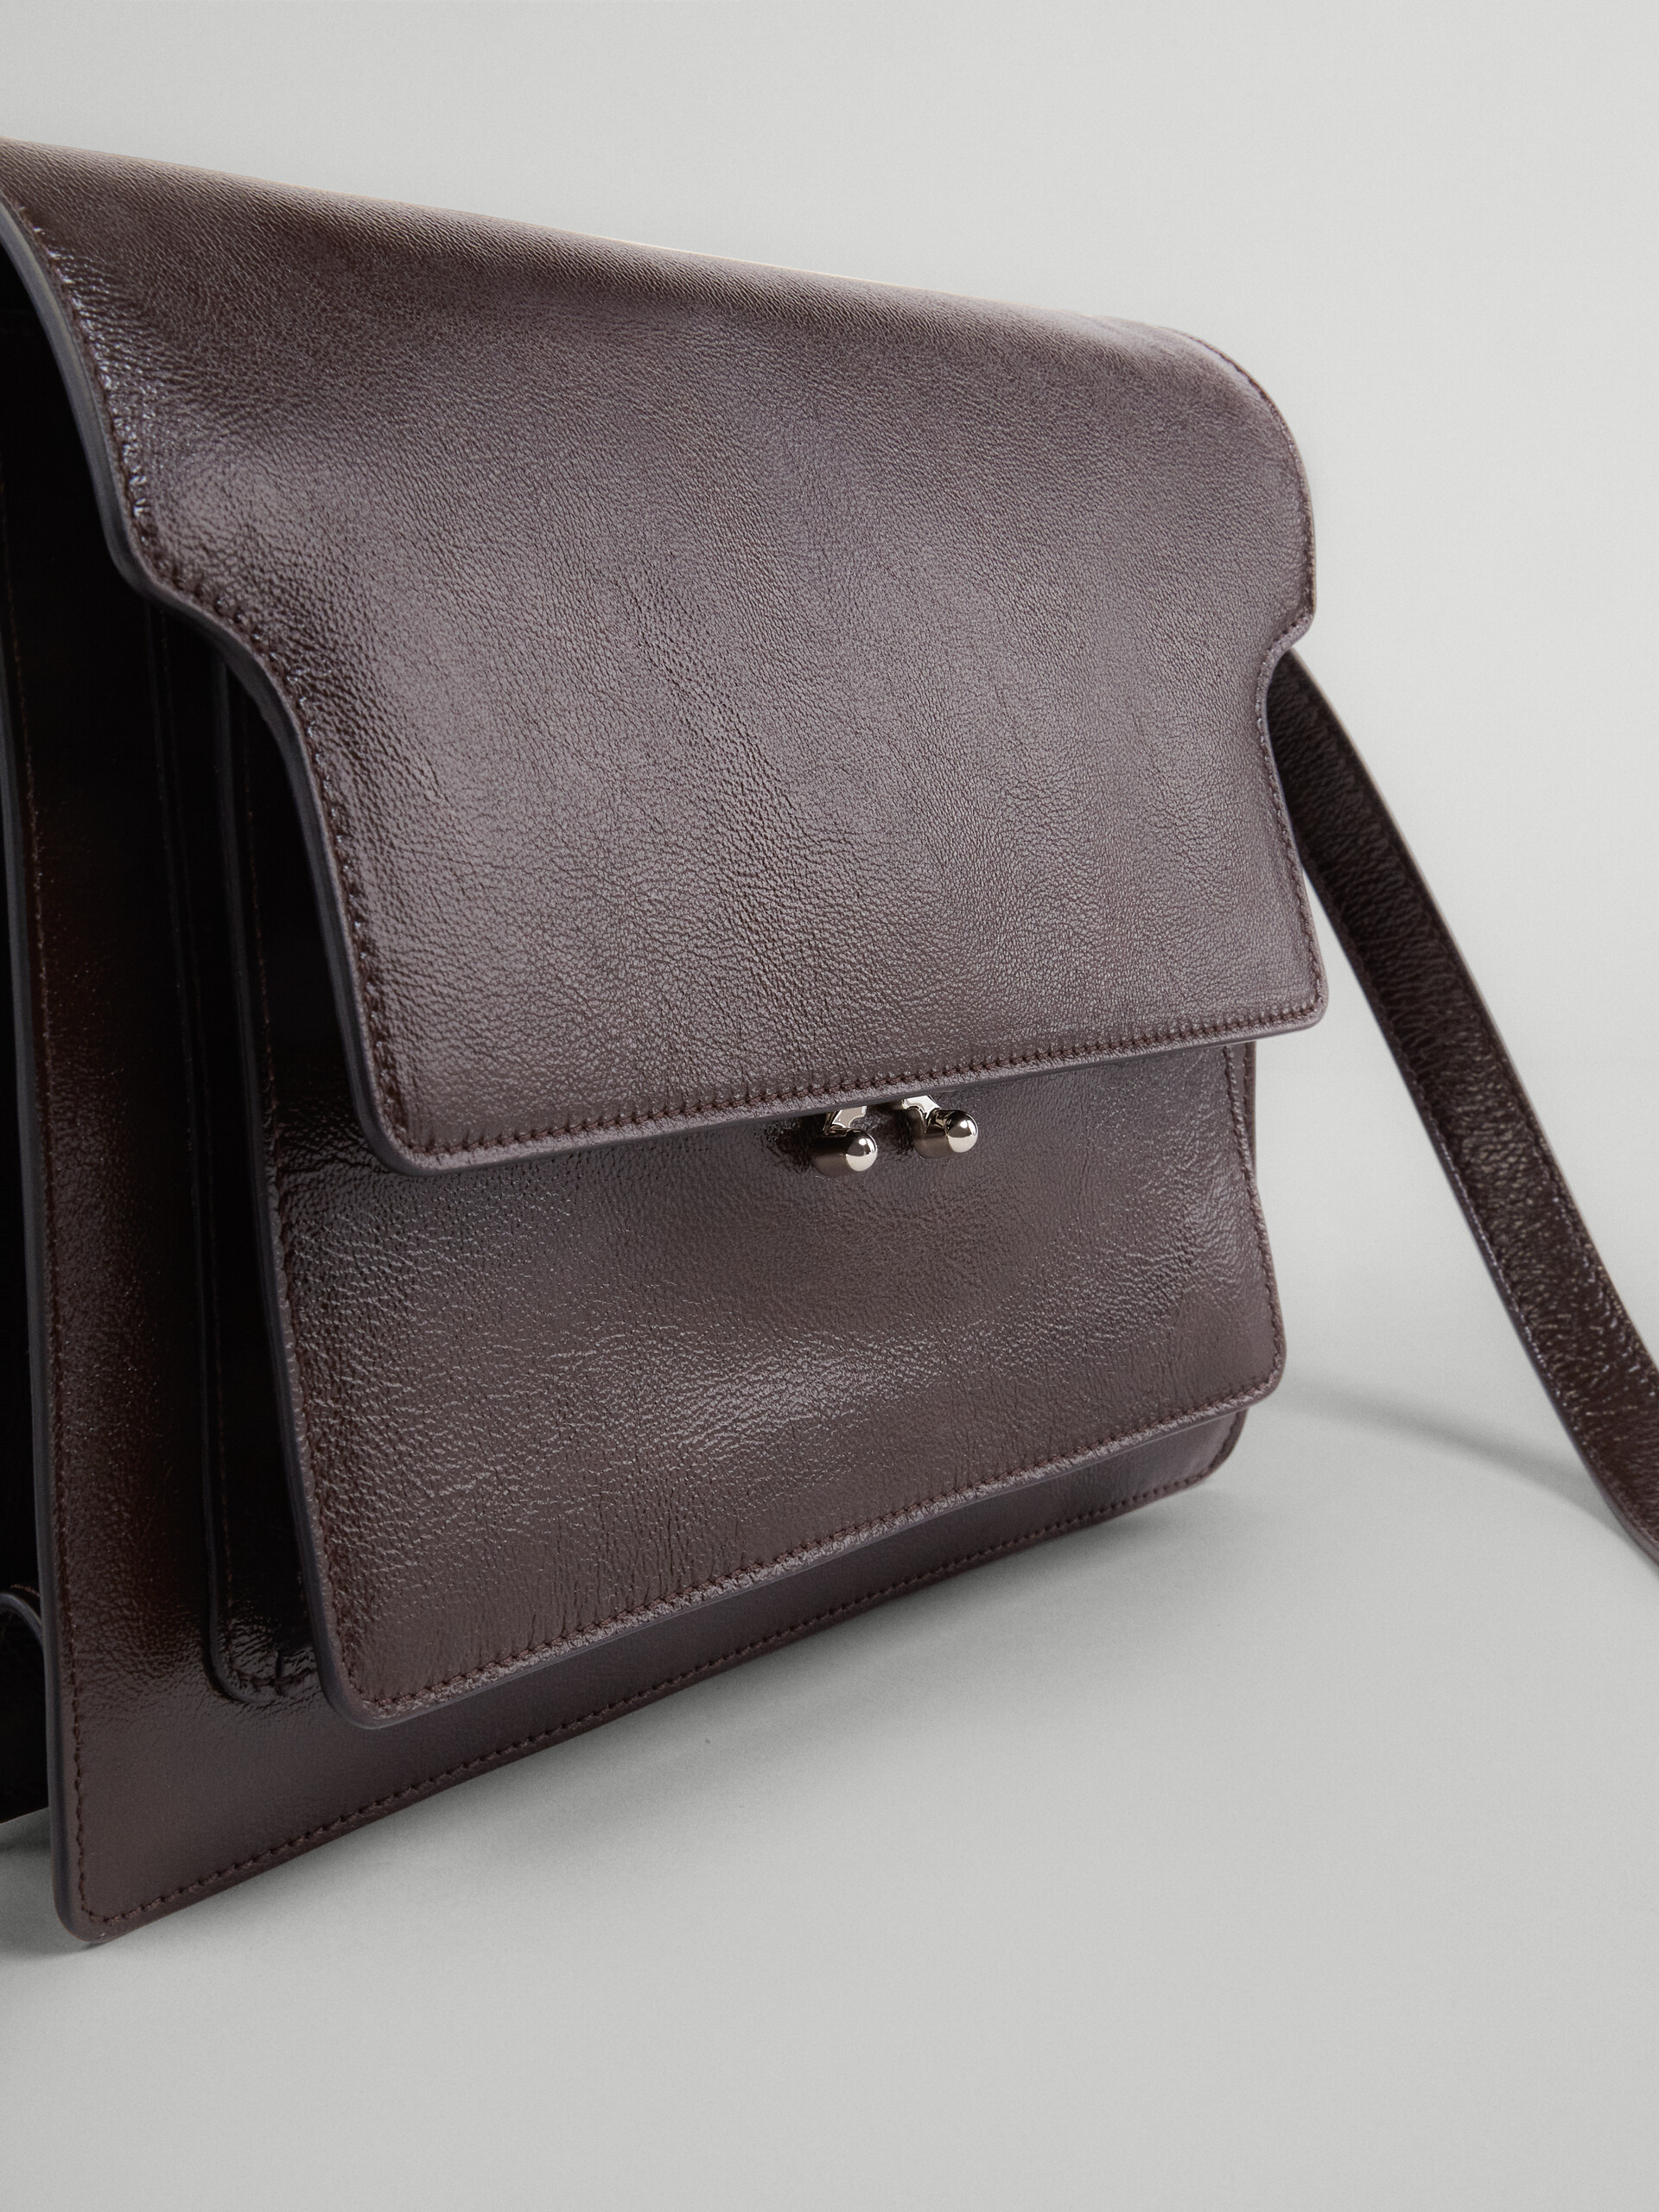 Grand sac Trunk Soft en cuir noir - Sacs portés épaule - Image 3